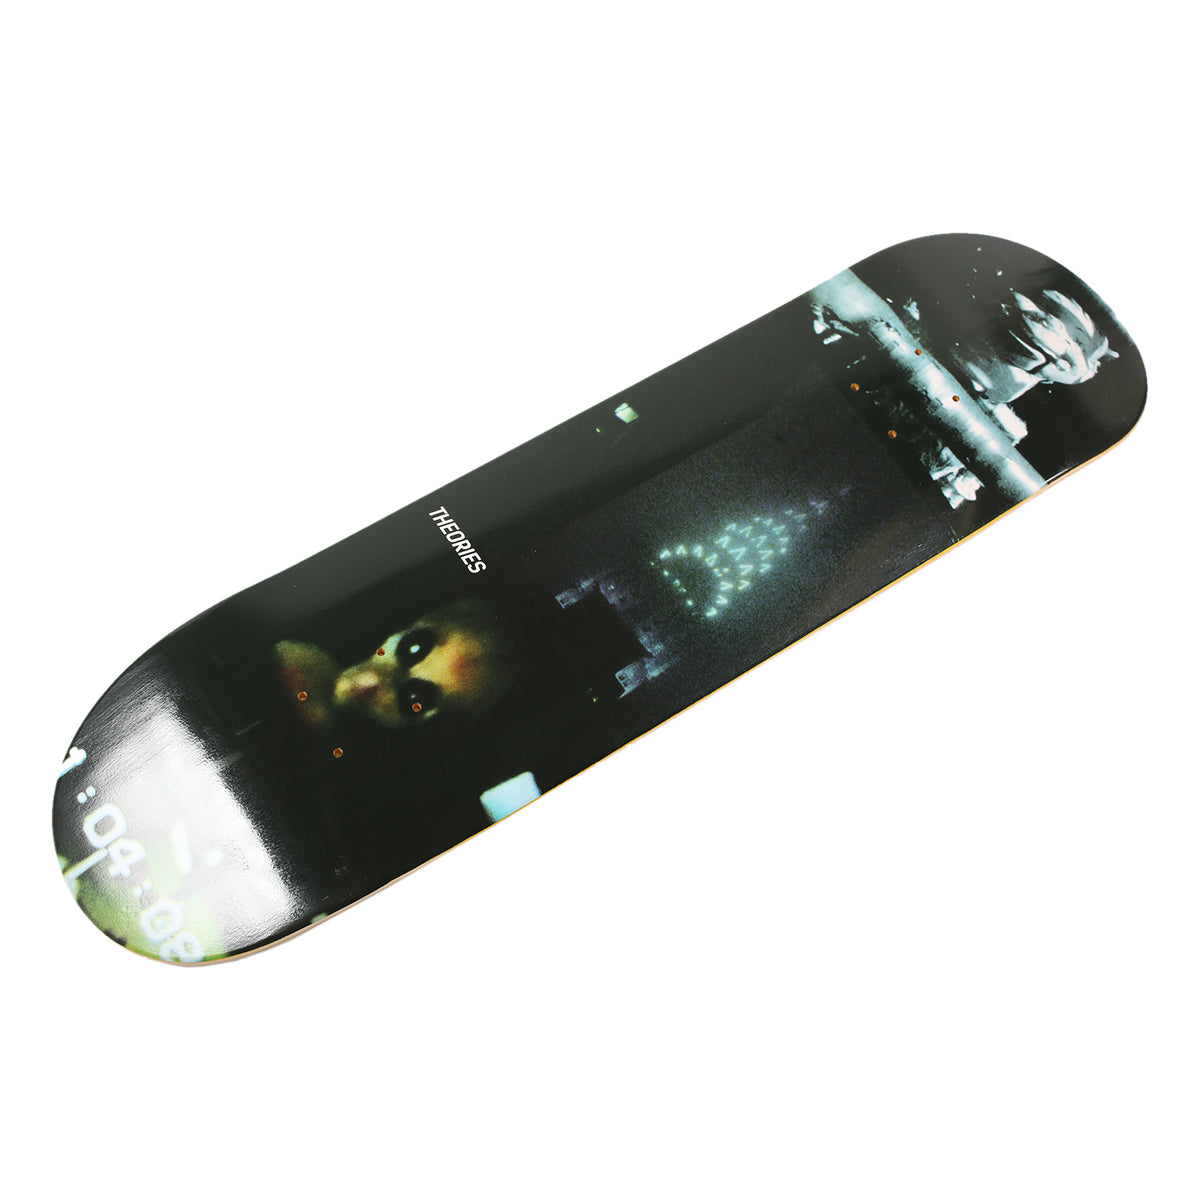 Theories 16mm Jupiter Skateboard Deck